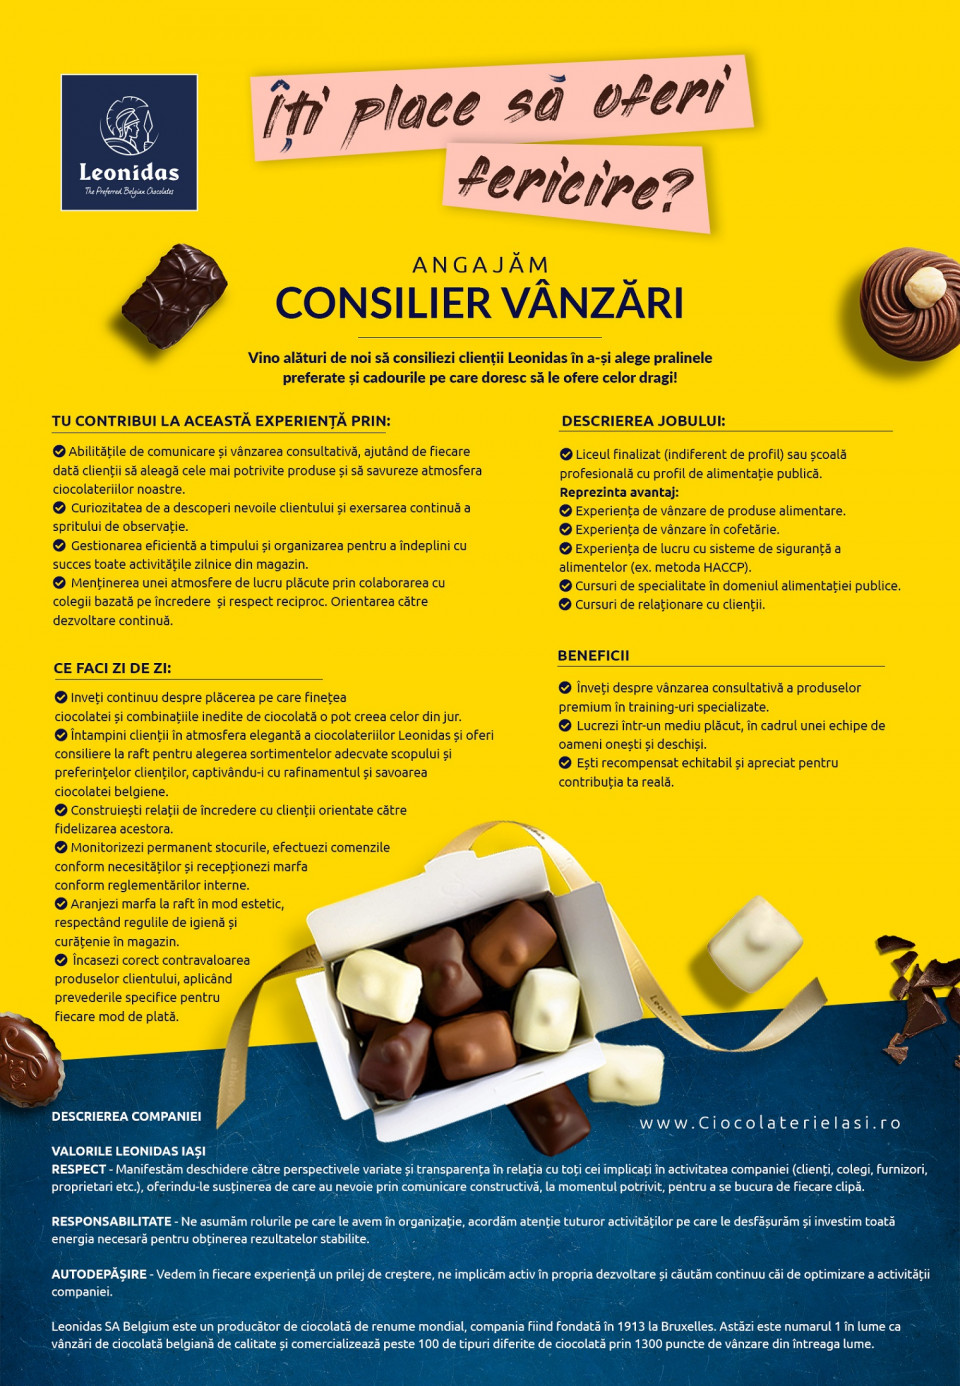 Consilier Vanzari - Ciocolaterie Leonidas